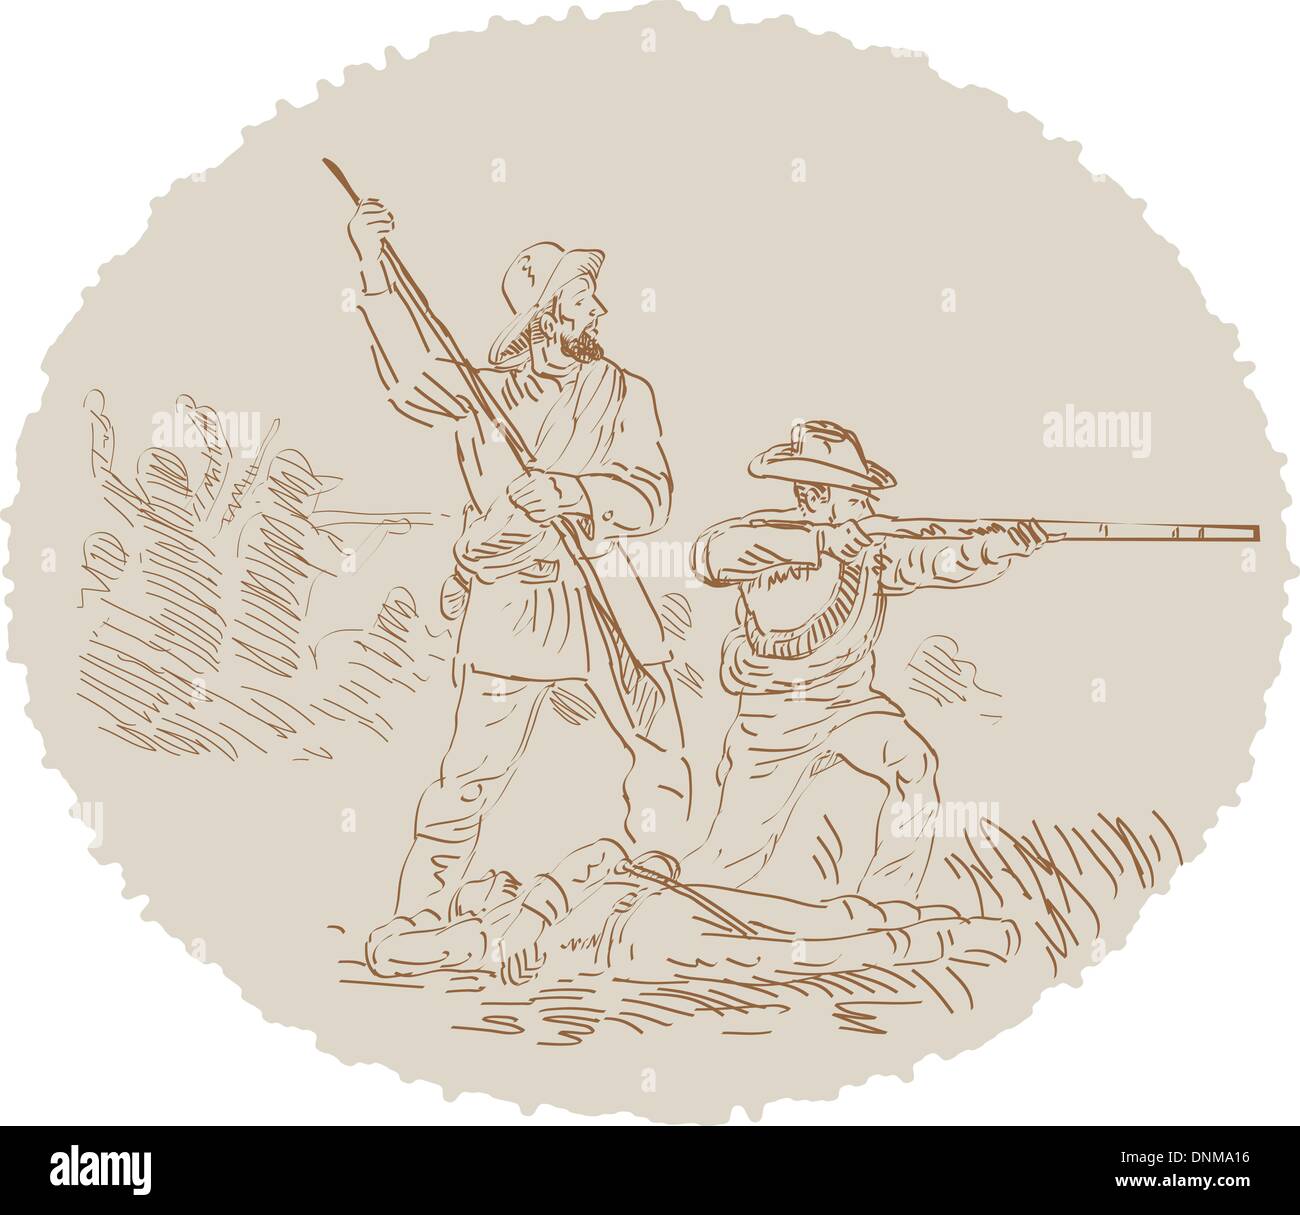 Illustration d'une guerre civile américaine confederate soldat combattant dessiné et esquissé. Illustration de Vecteur